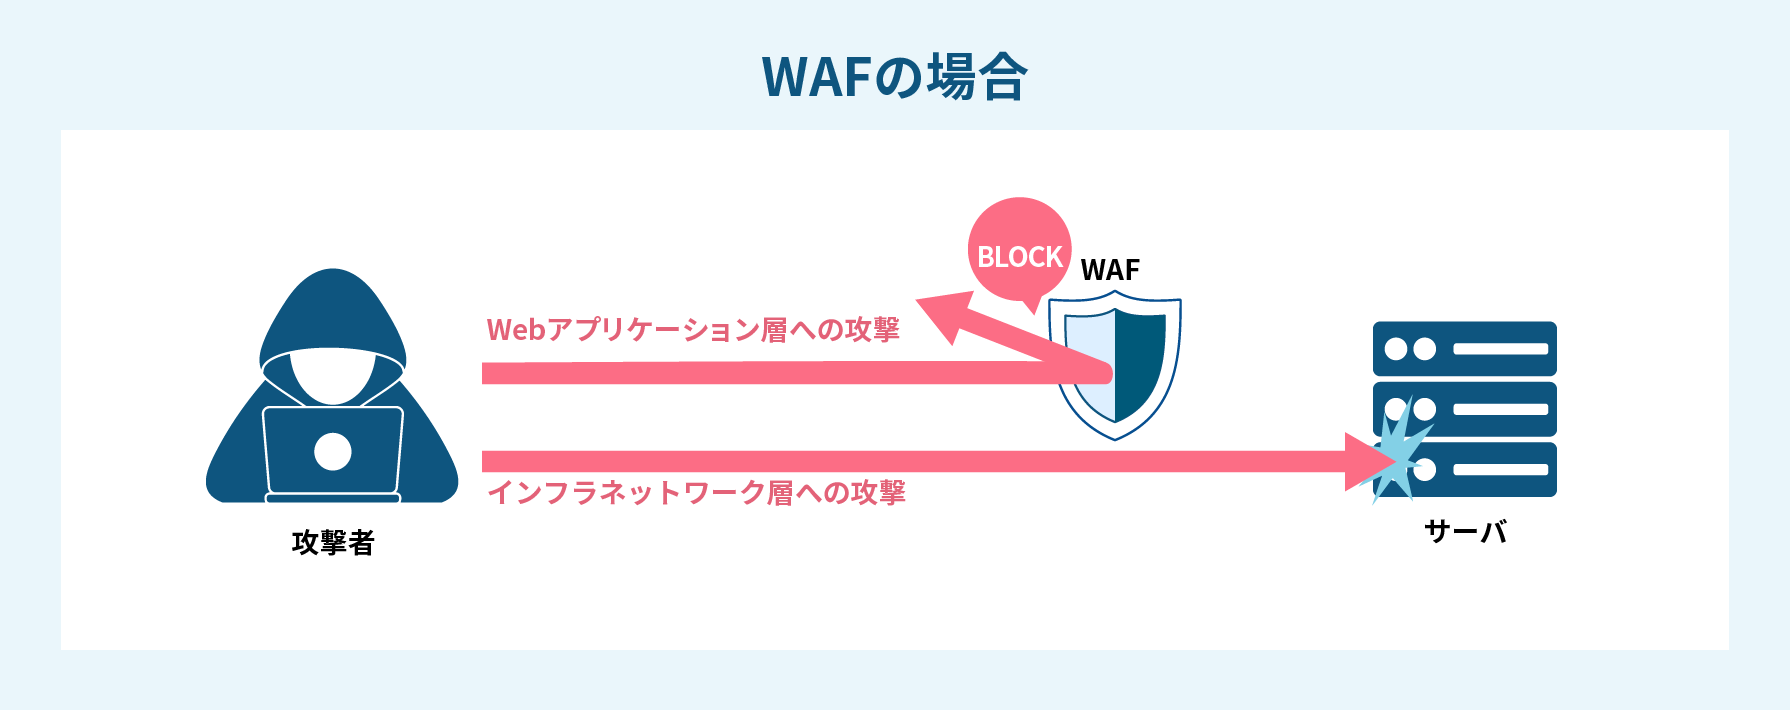 Webアプリケーションへの通信の中身をチェックするWAF。